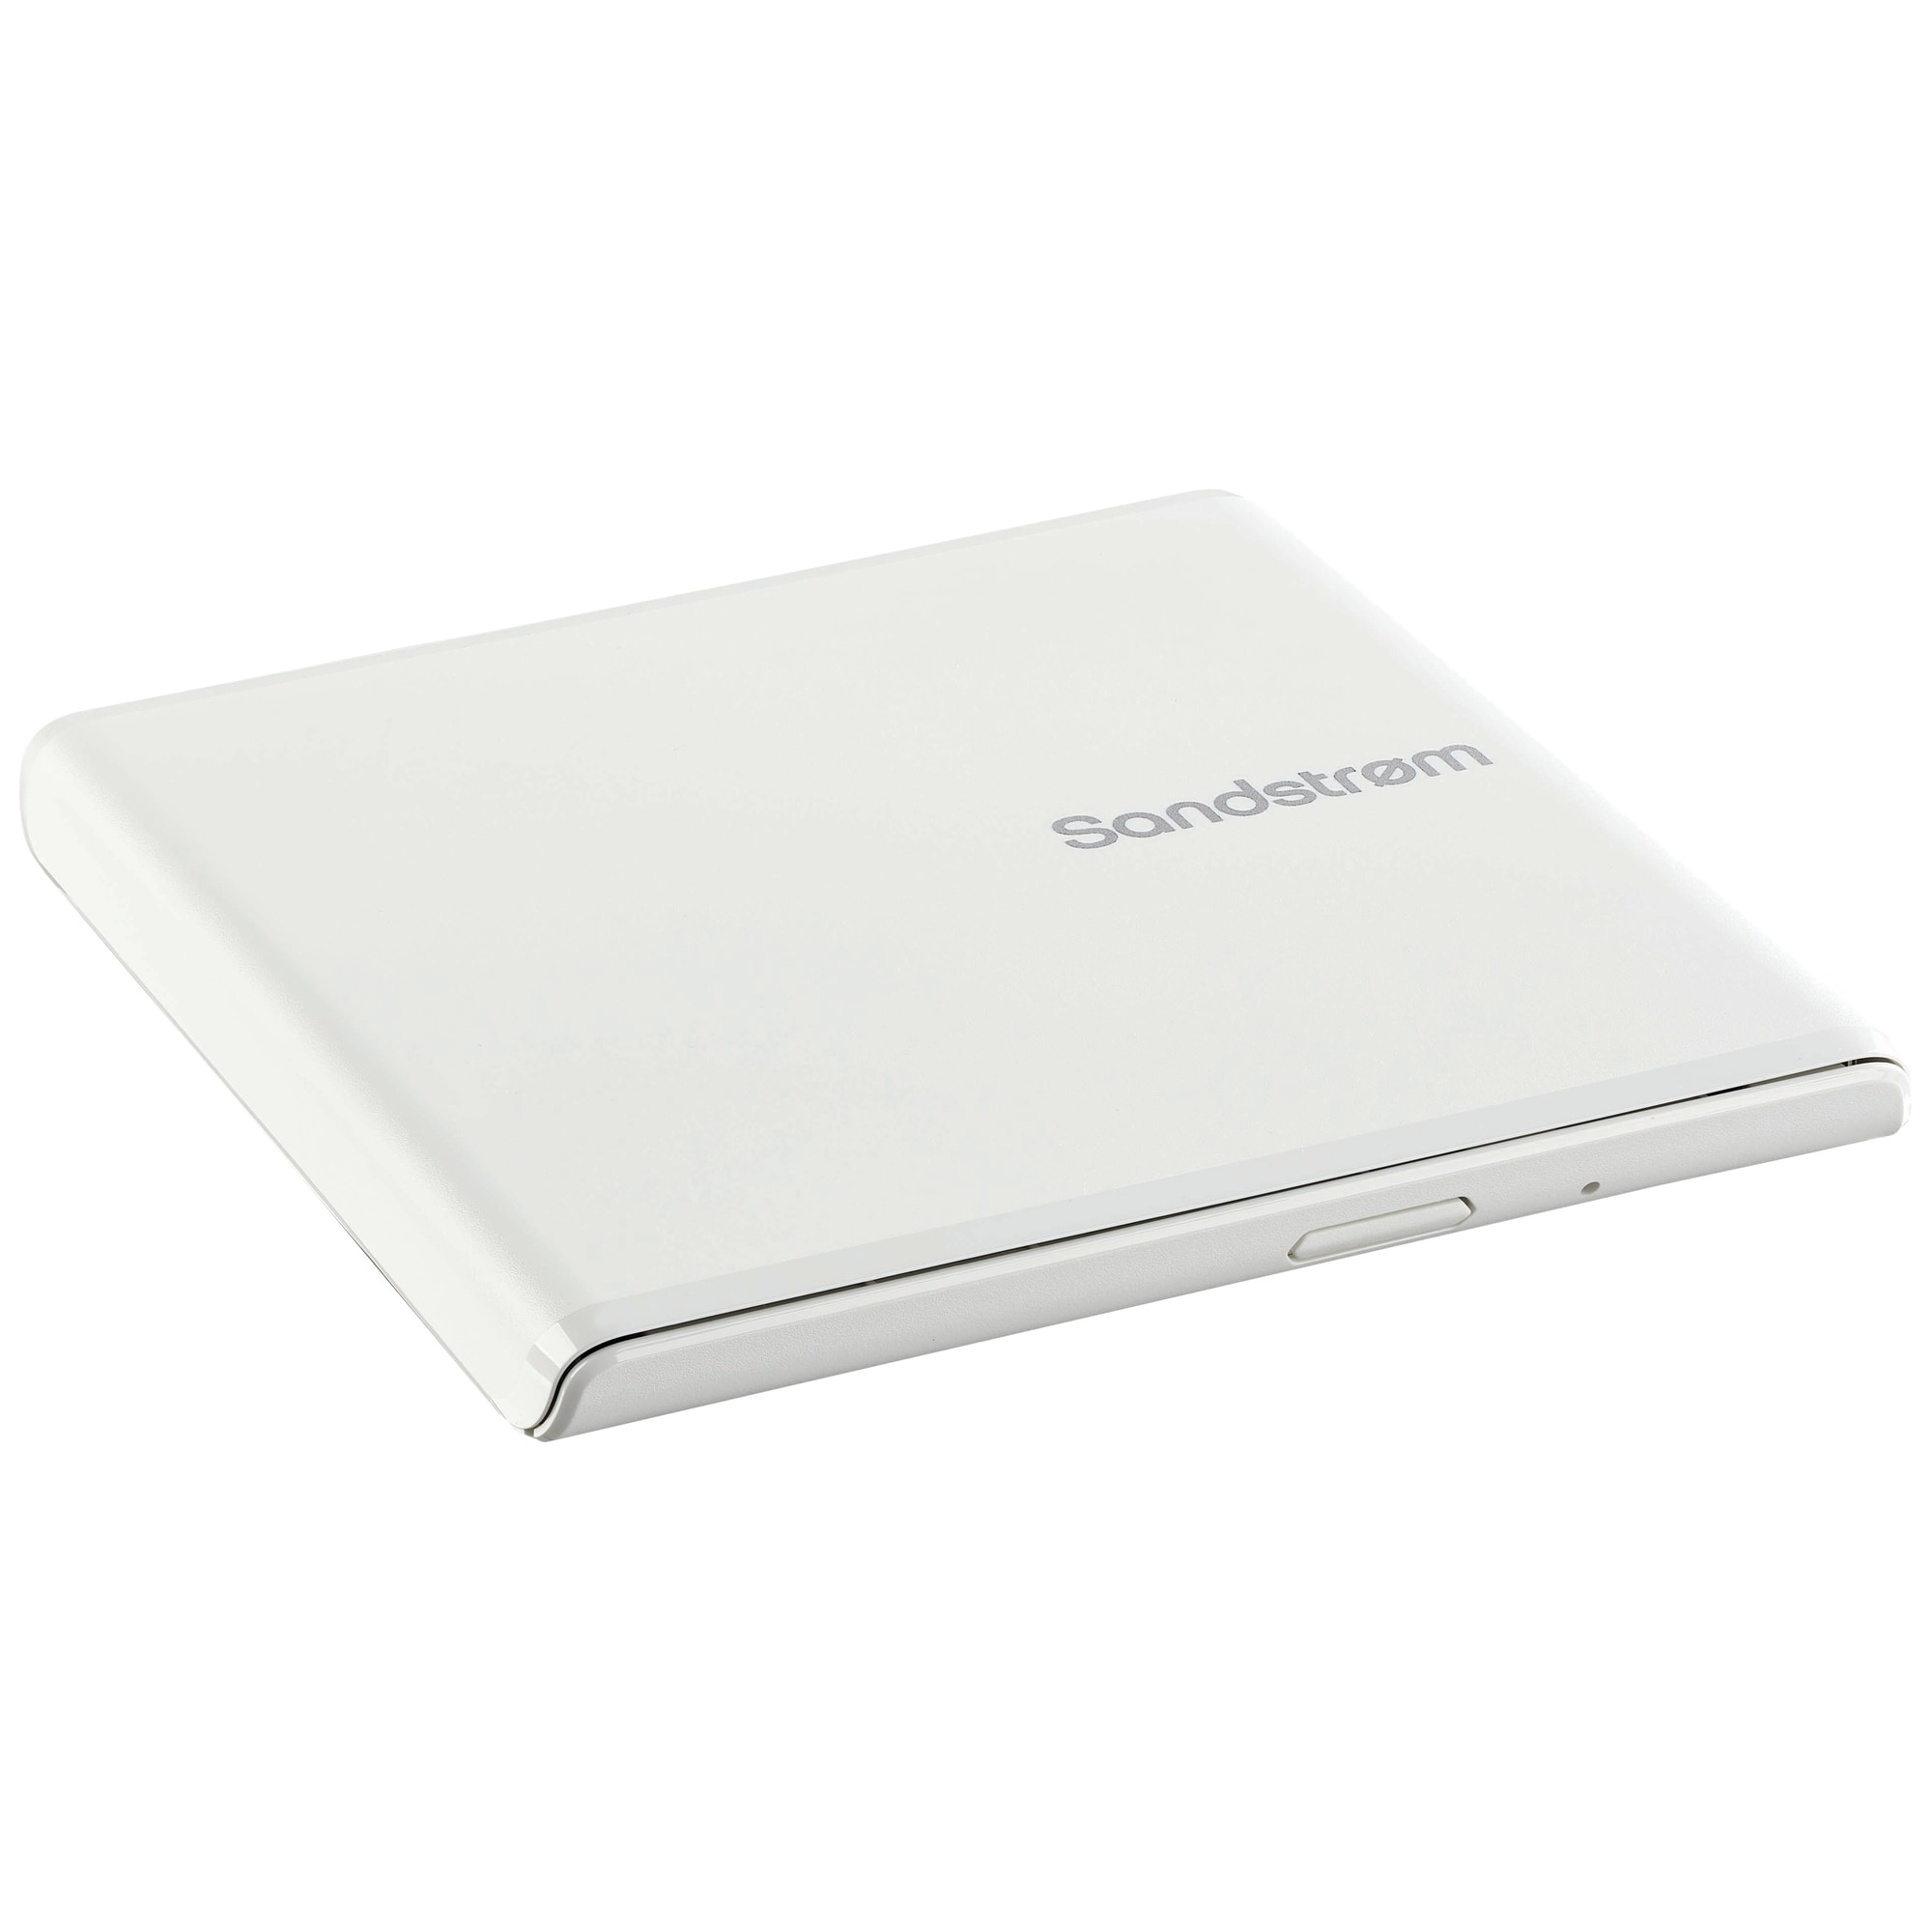 Sandstrøm ekstern USB Slim DVD/CD optisk drev (hvid) | Elgiganten